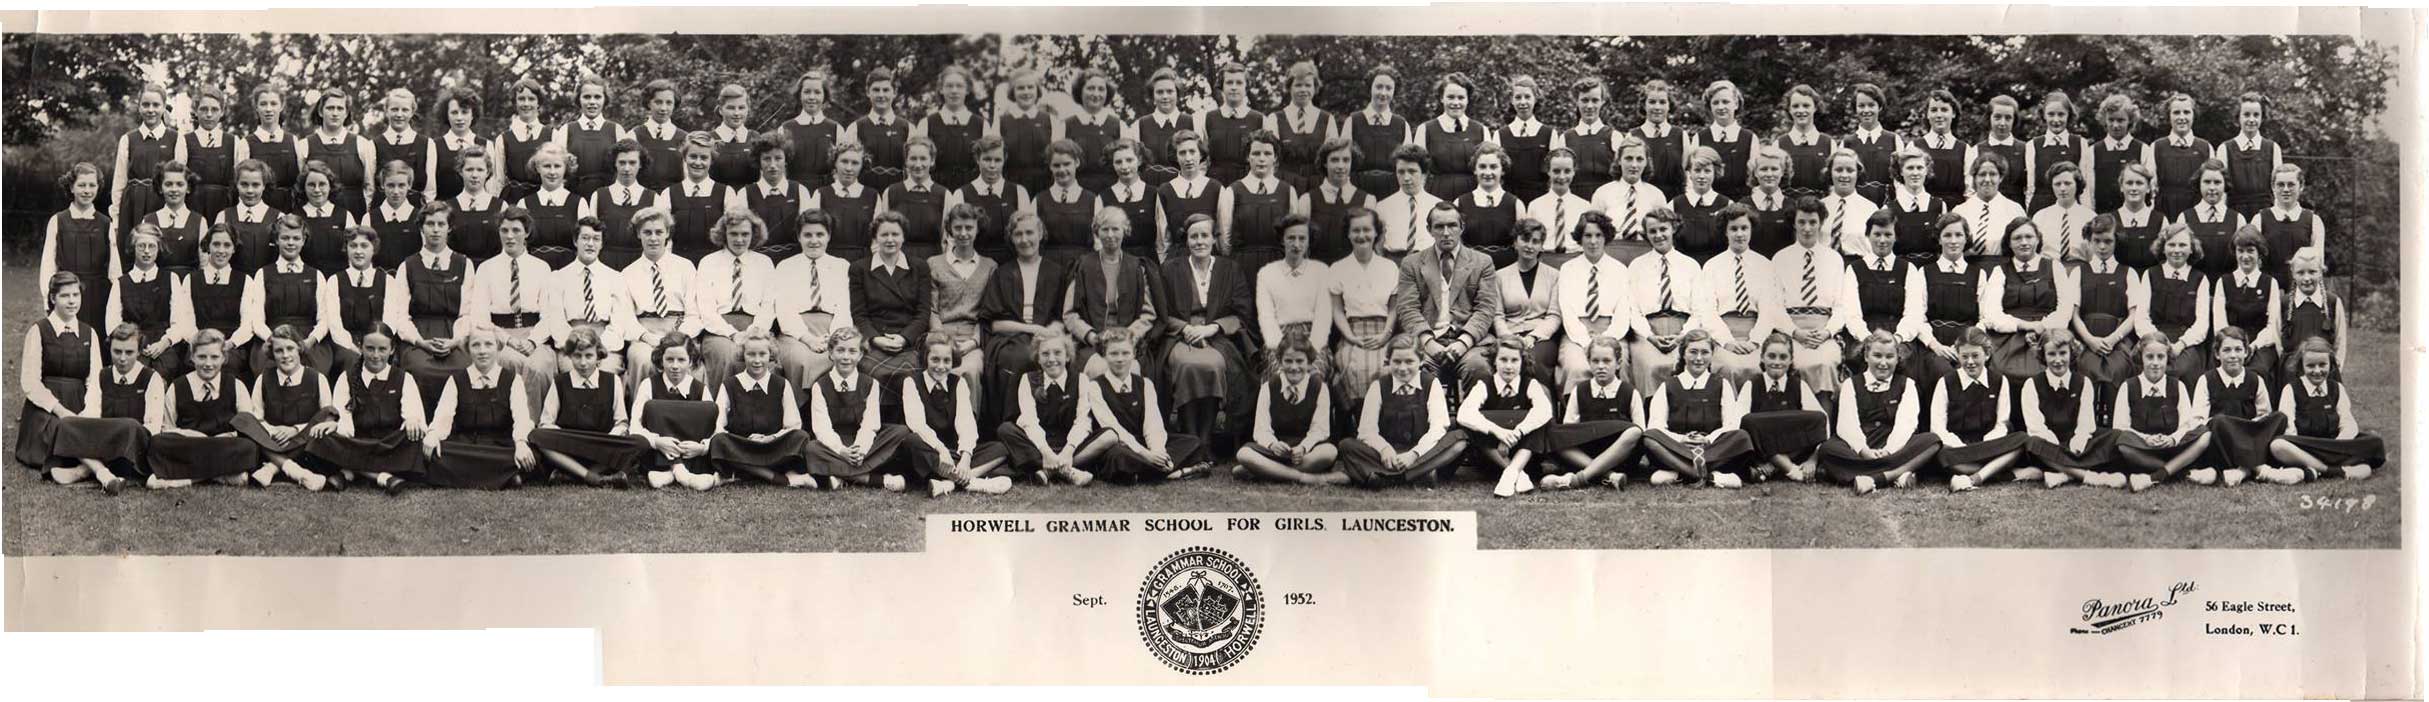 Horwell Girls Grammar School in 1952. Photo courtesy of Ann Caddick.